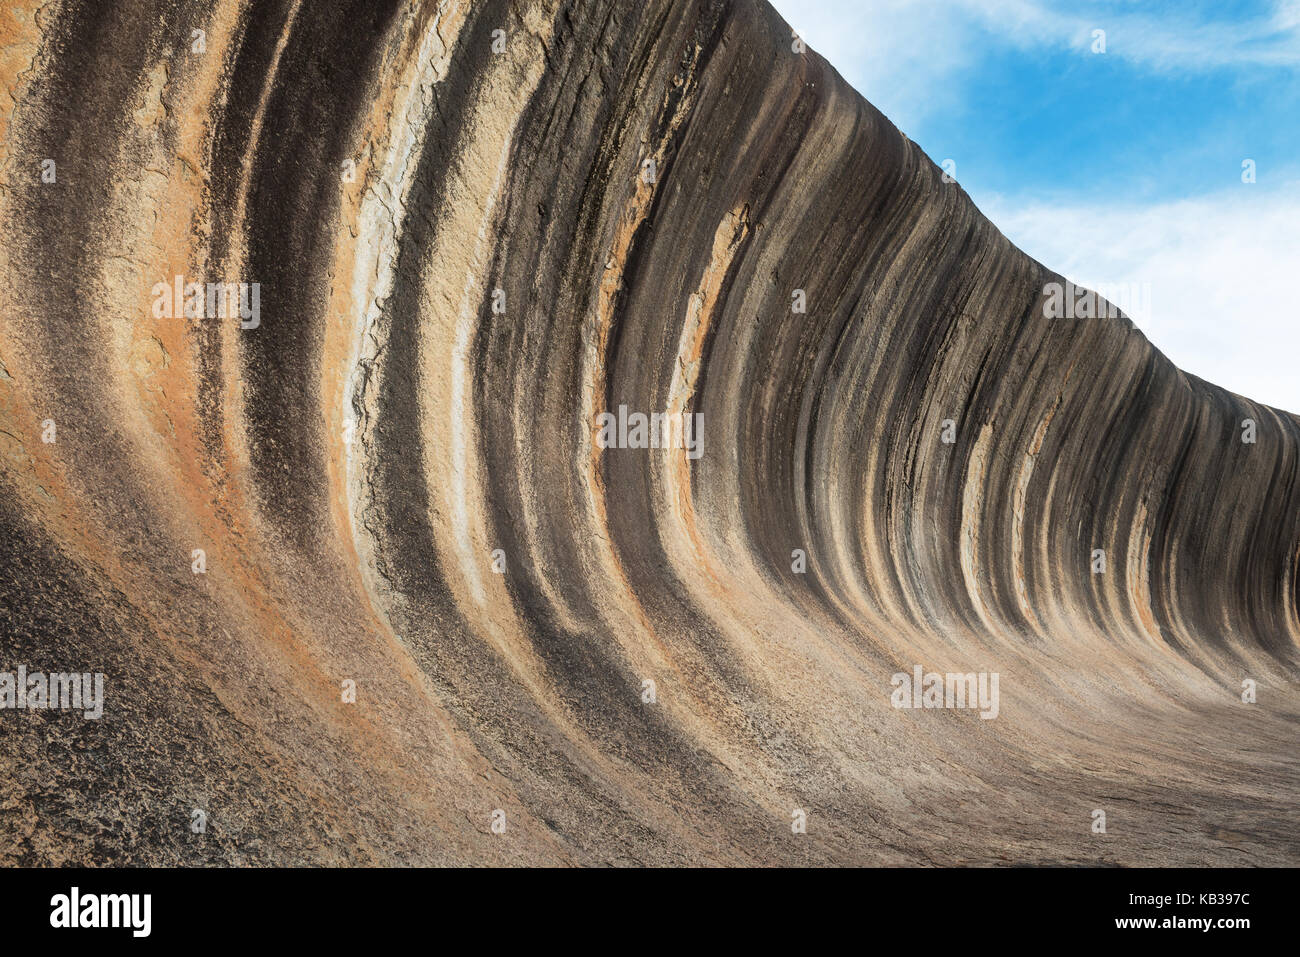 Fantastische Wave Rock im Wave Rock Wildlife Park in der Nähe von hyden in Westaustralien. Australien Stockfoto